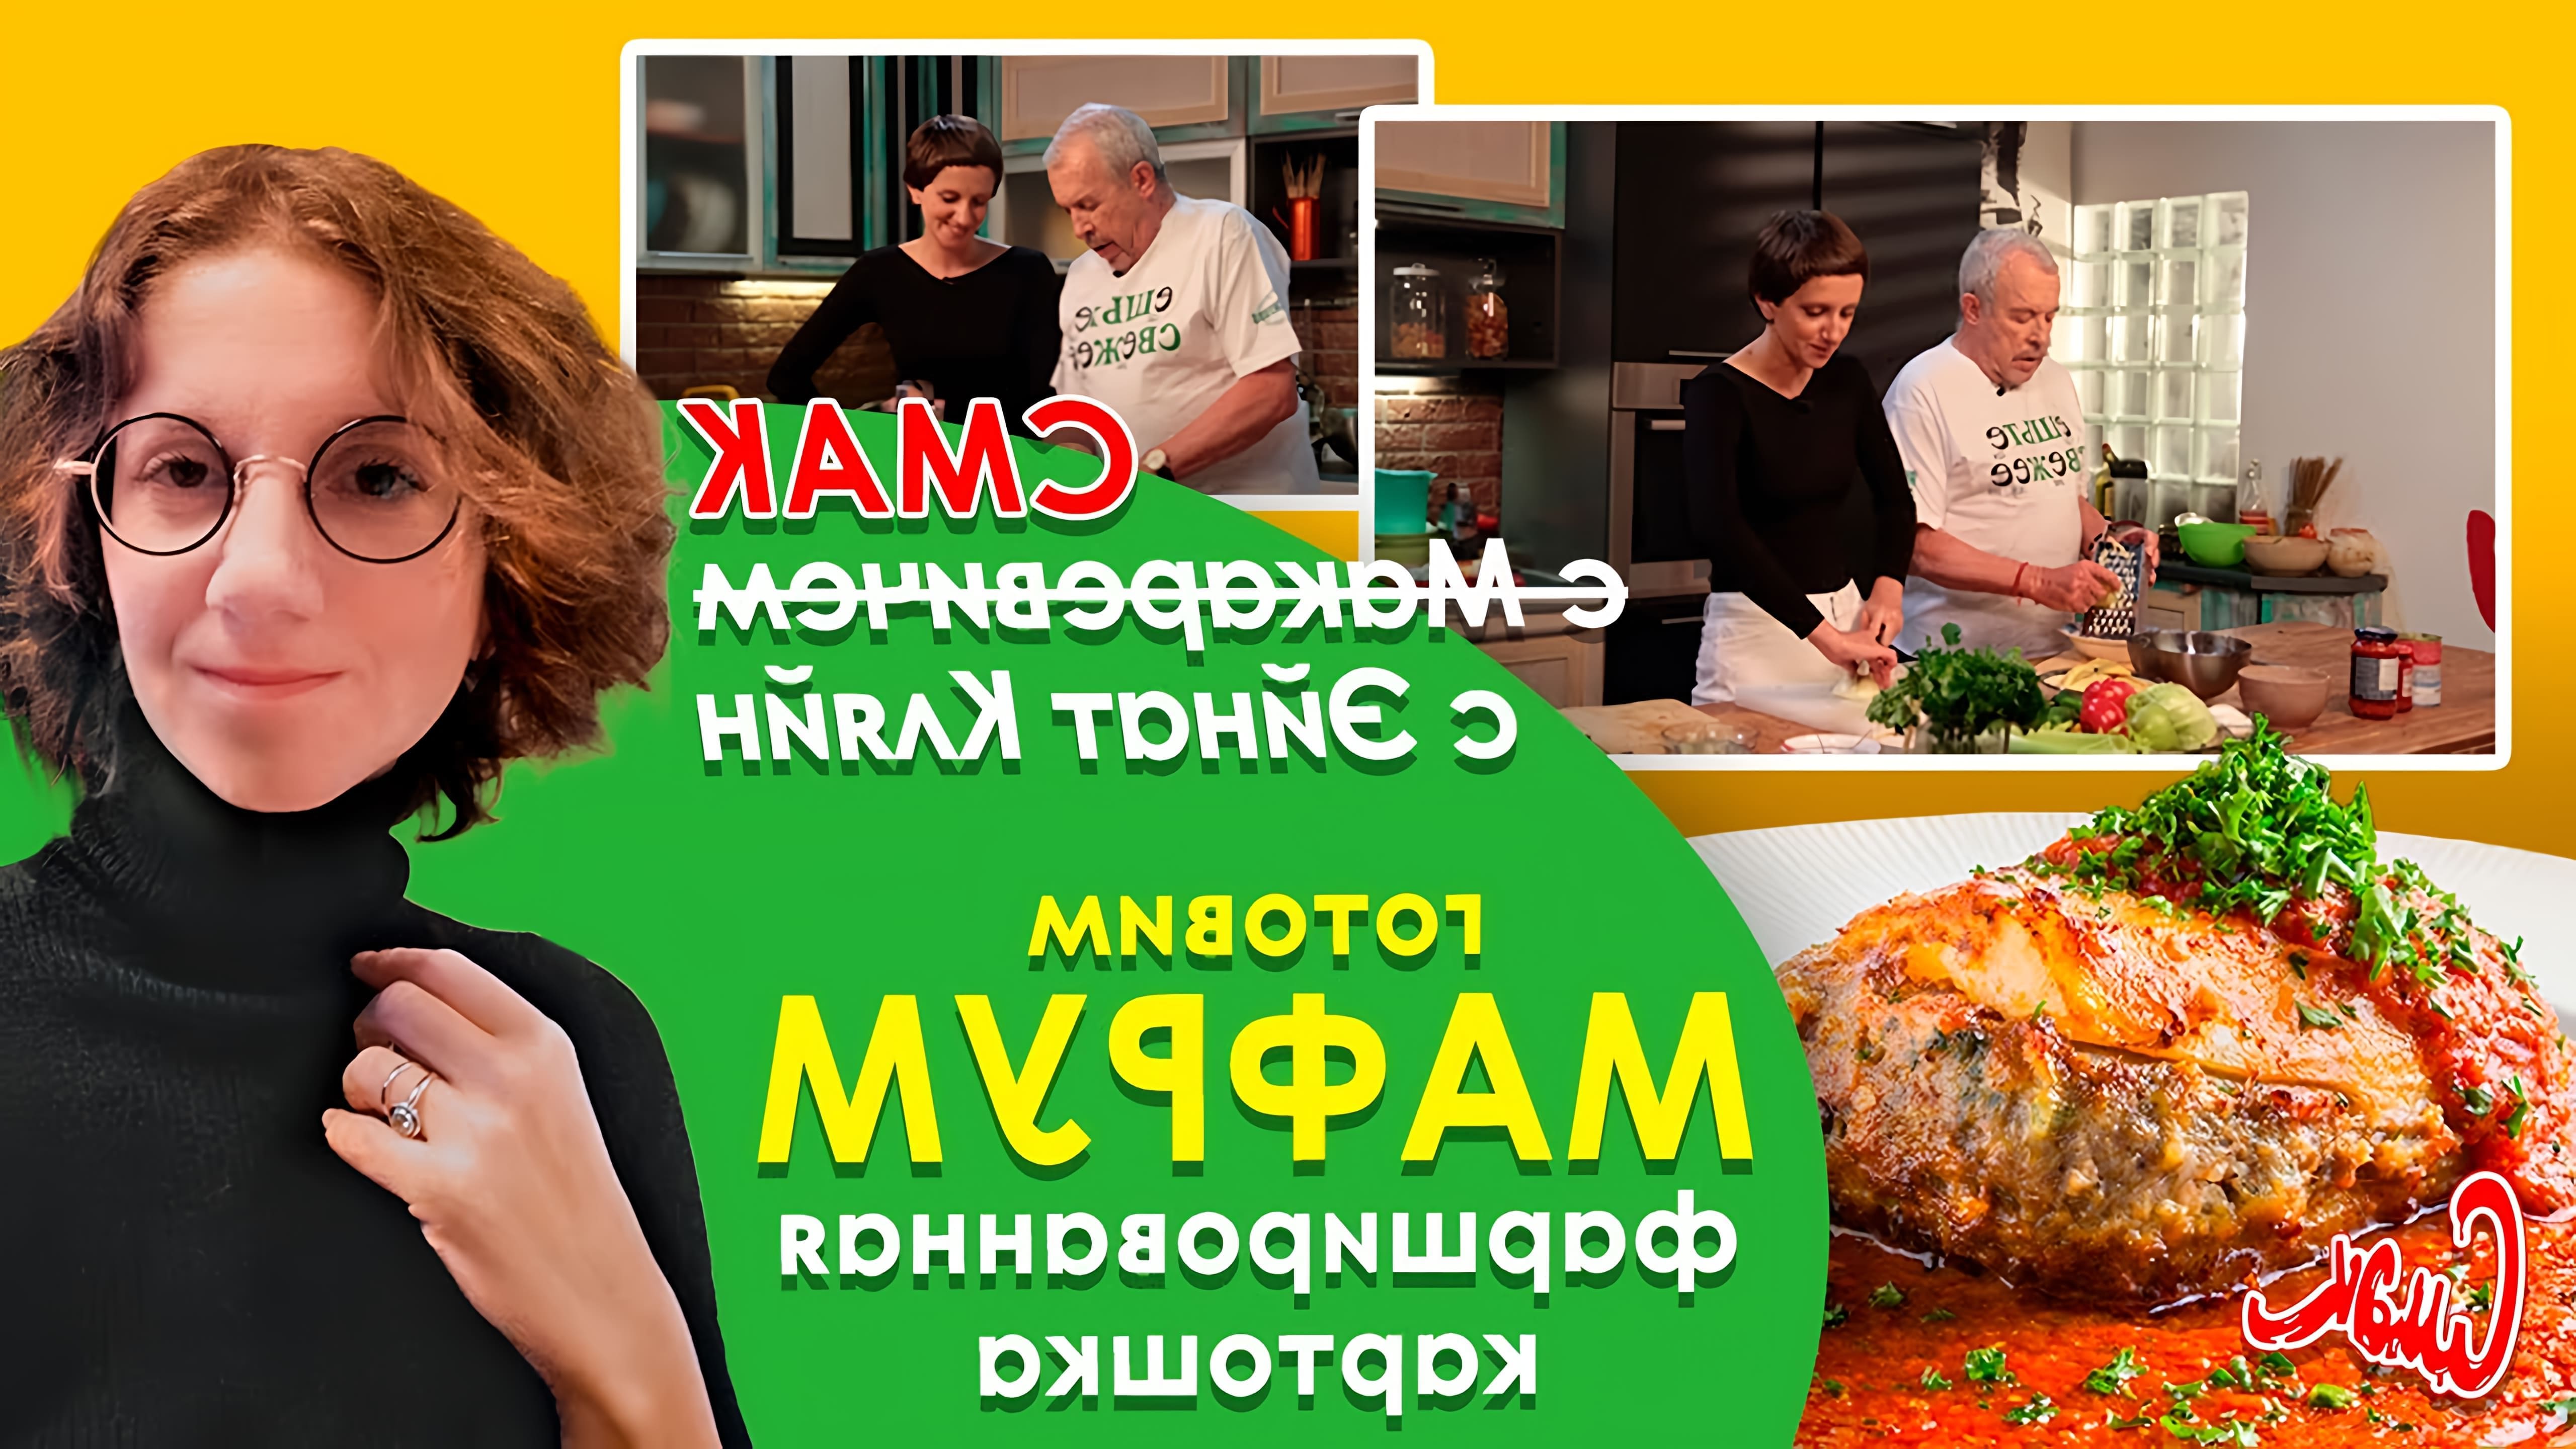 В этом видео Андрей Макаревич готовит ливийское блюдо мафрум, которое представляет собой фаршированную картошку с мясом